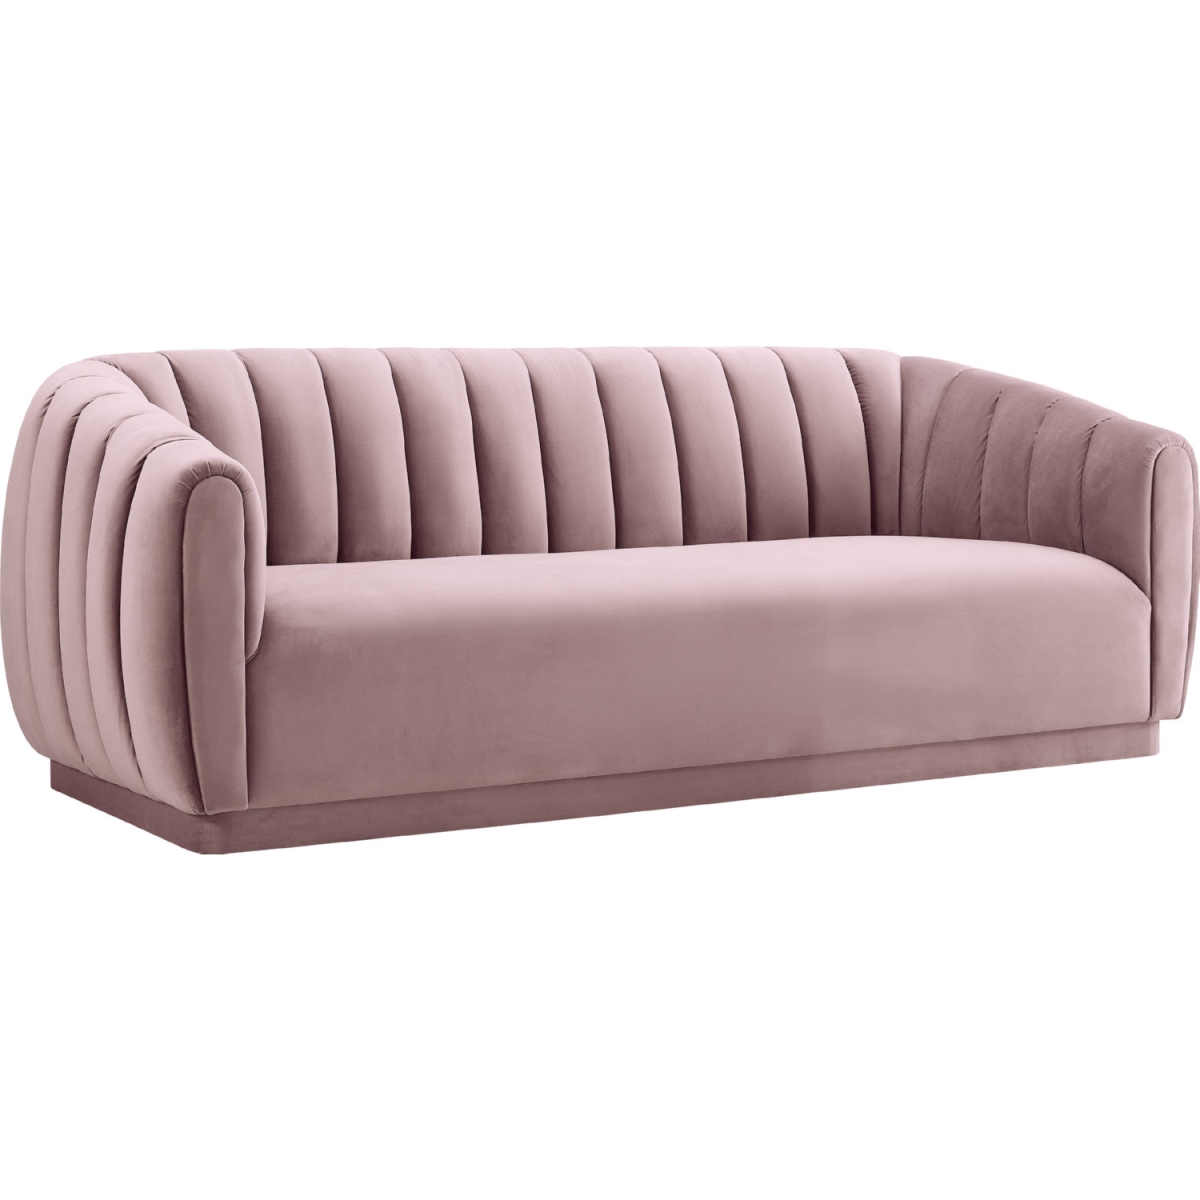 TOV-S168 32.5 x 88.6 x 37.5 in. Arno Blush Velvet Sofa -  Tov Furniture